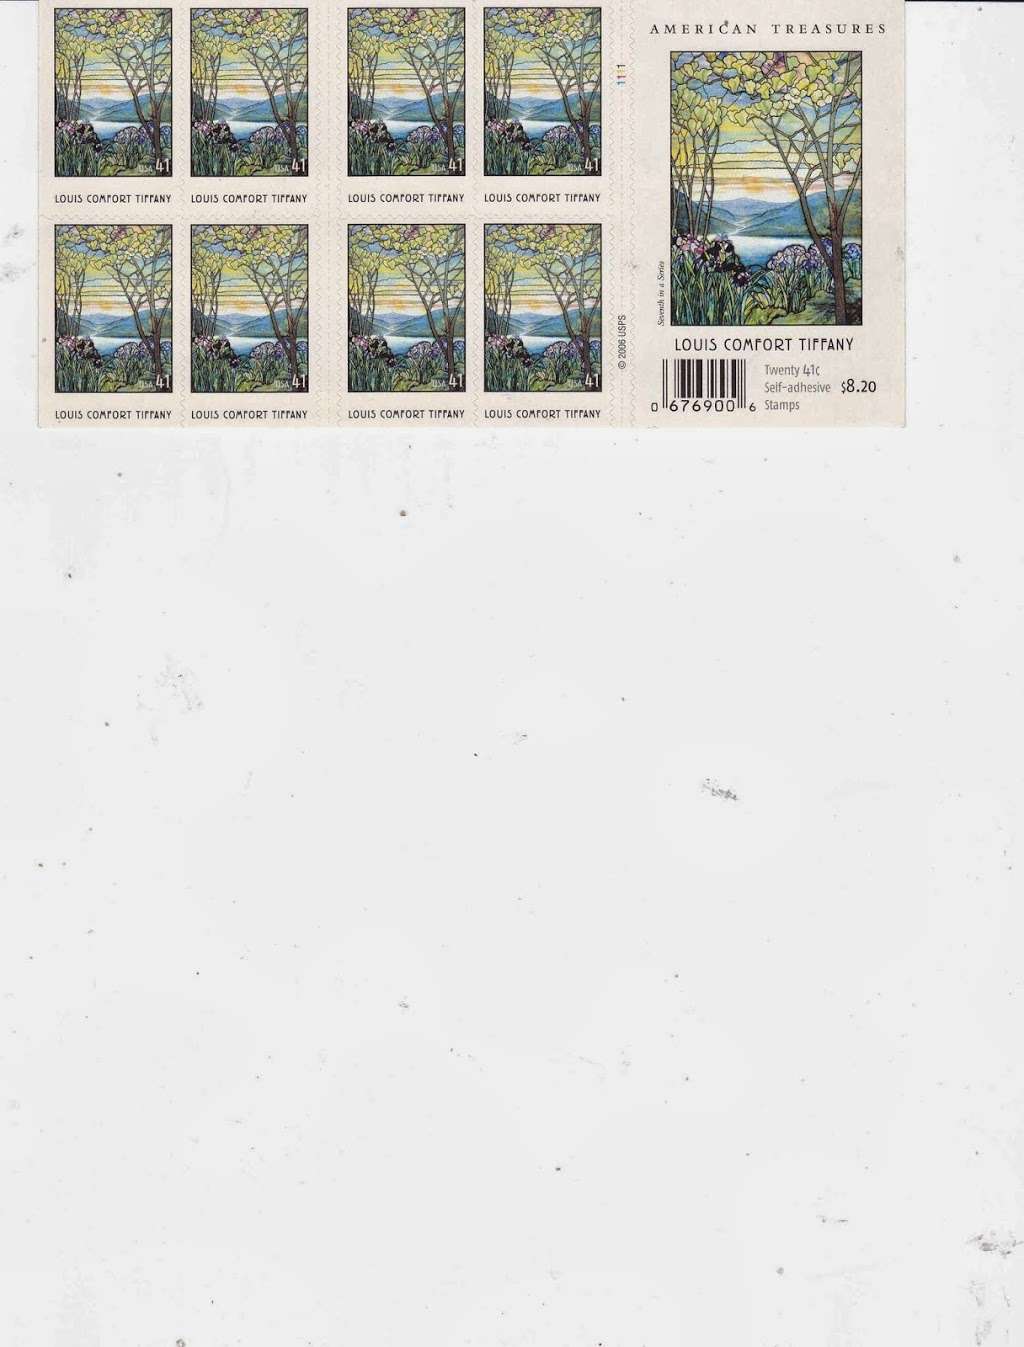 Stamps for collectors. | 3200 La Rotonda Dr, Rancho Palos Verdes, CA 90275 | Phone: (310) 377-1843